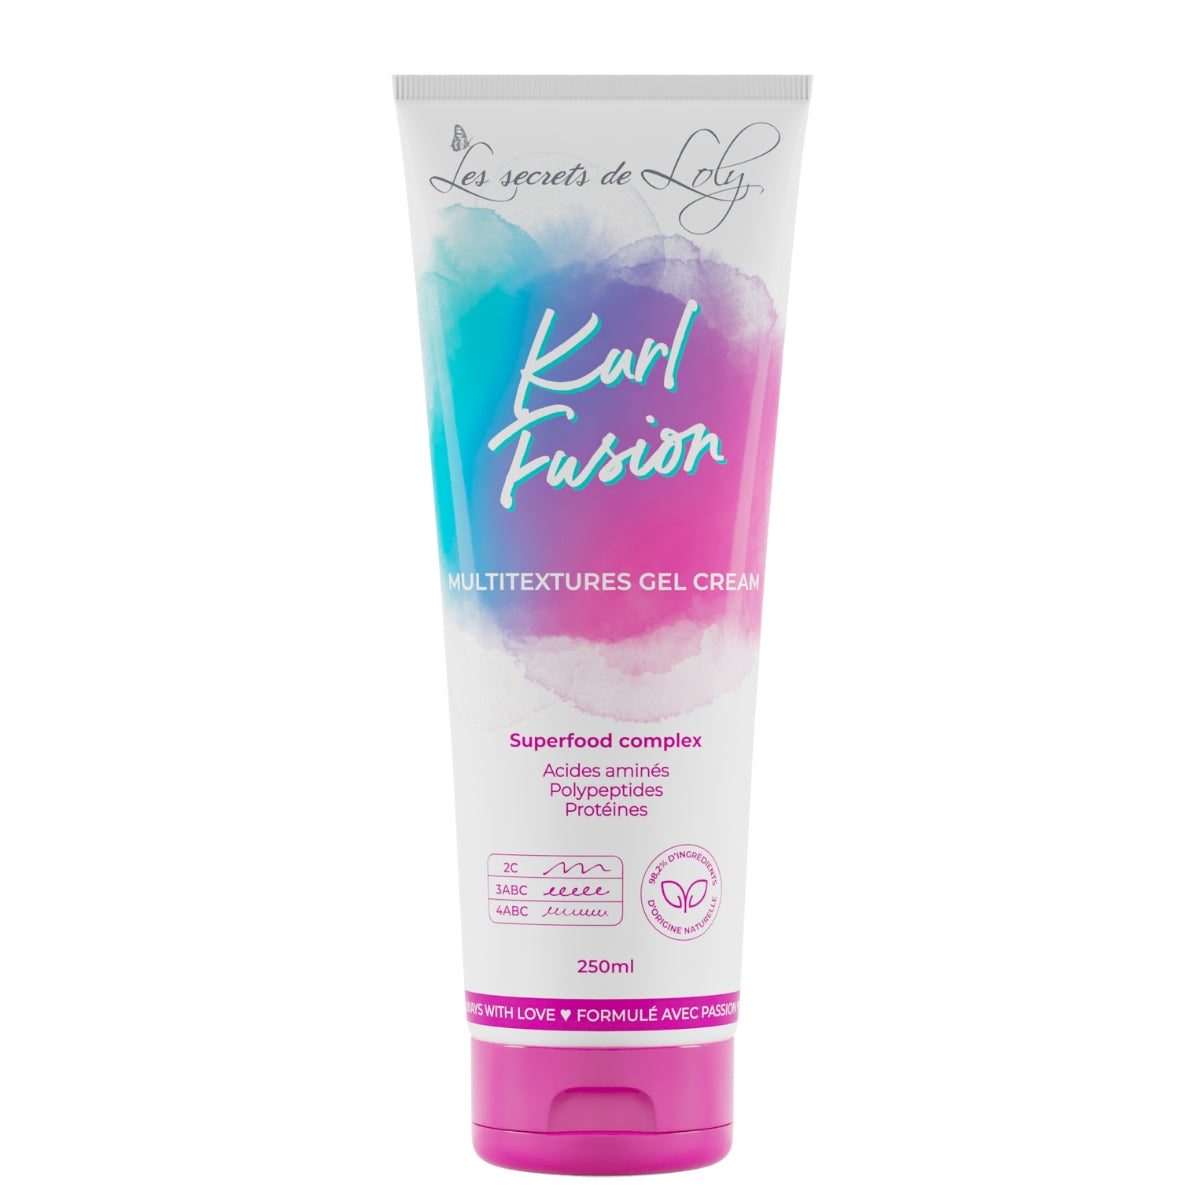 Les secrets de Loly Kurl Fusion - 250 ml - INCI Beauty